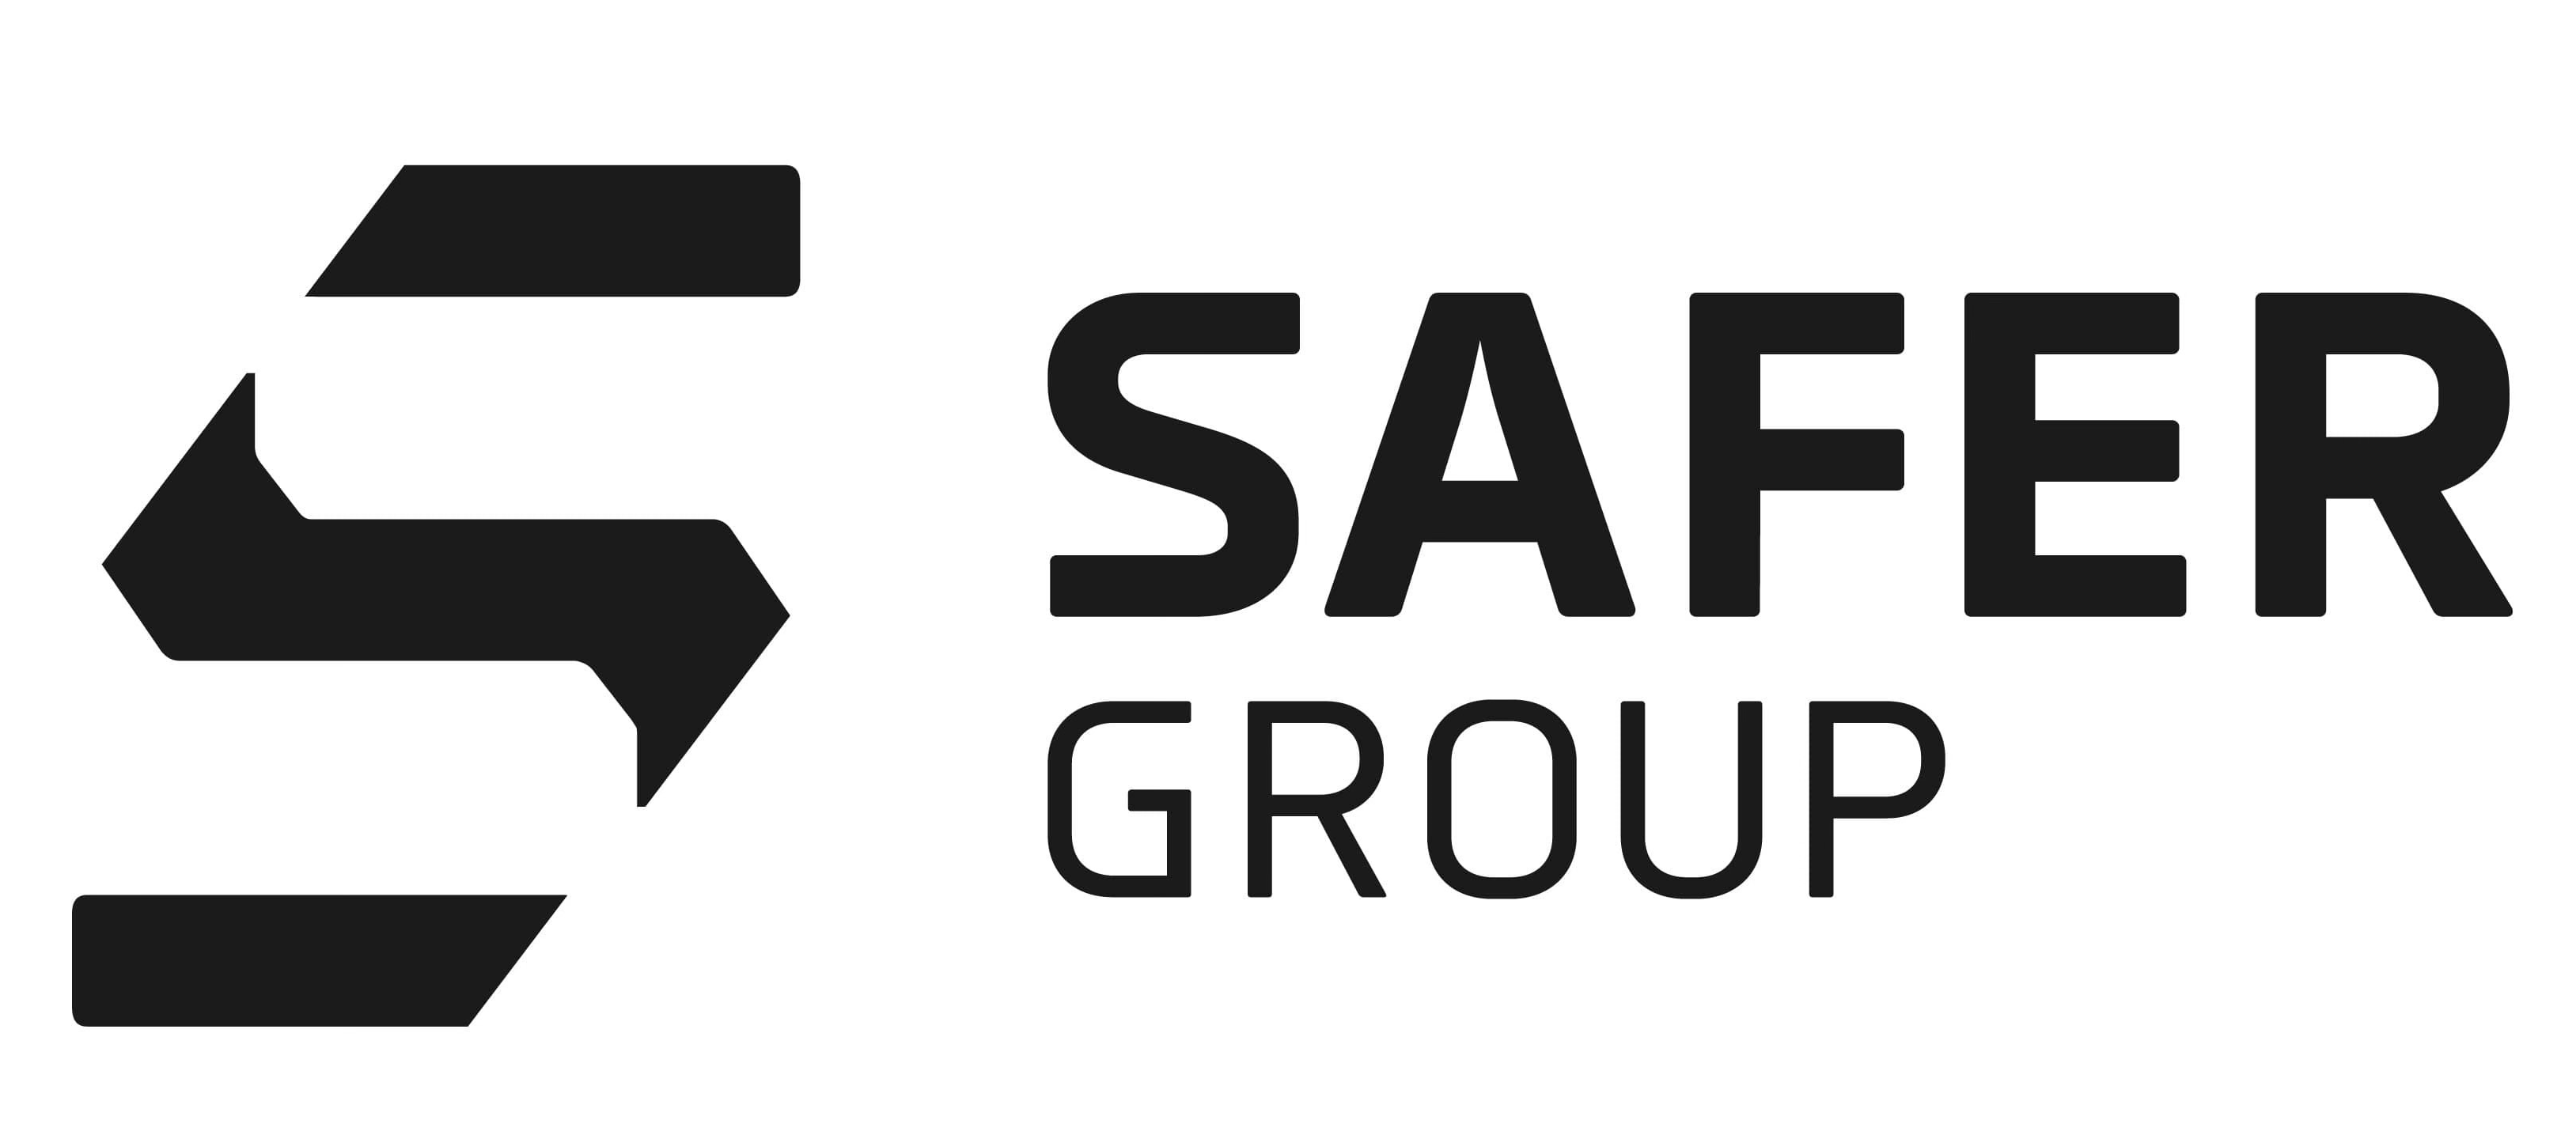 Safer Group Ltd Logo